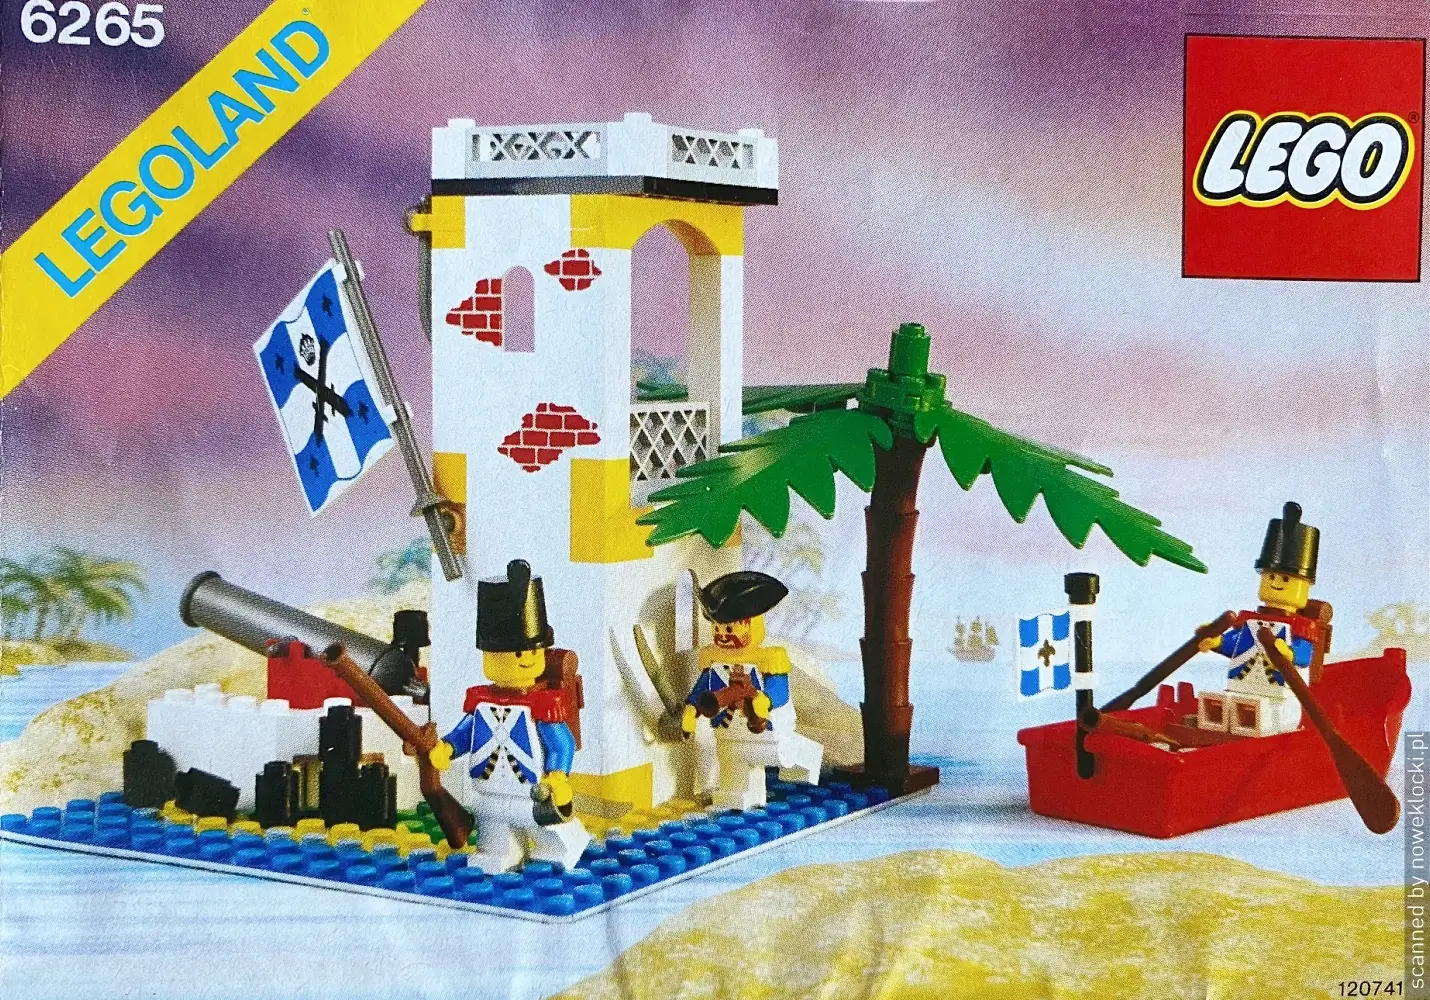 Zdjecie zestawu LEGO® nr 6265 – Sabre Island